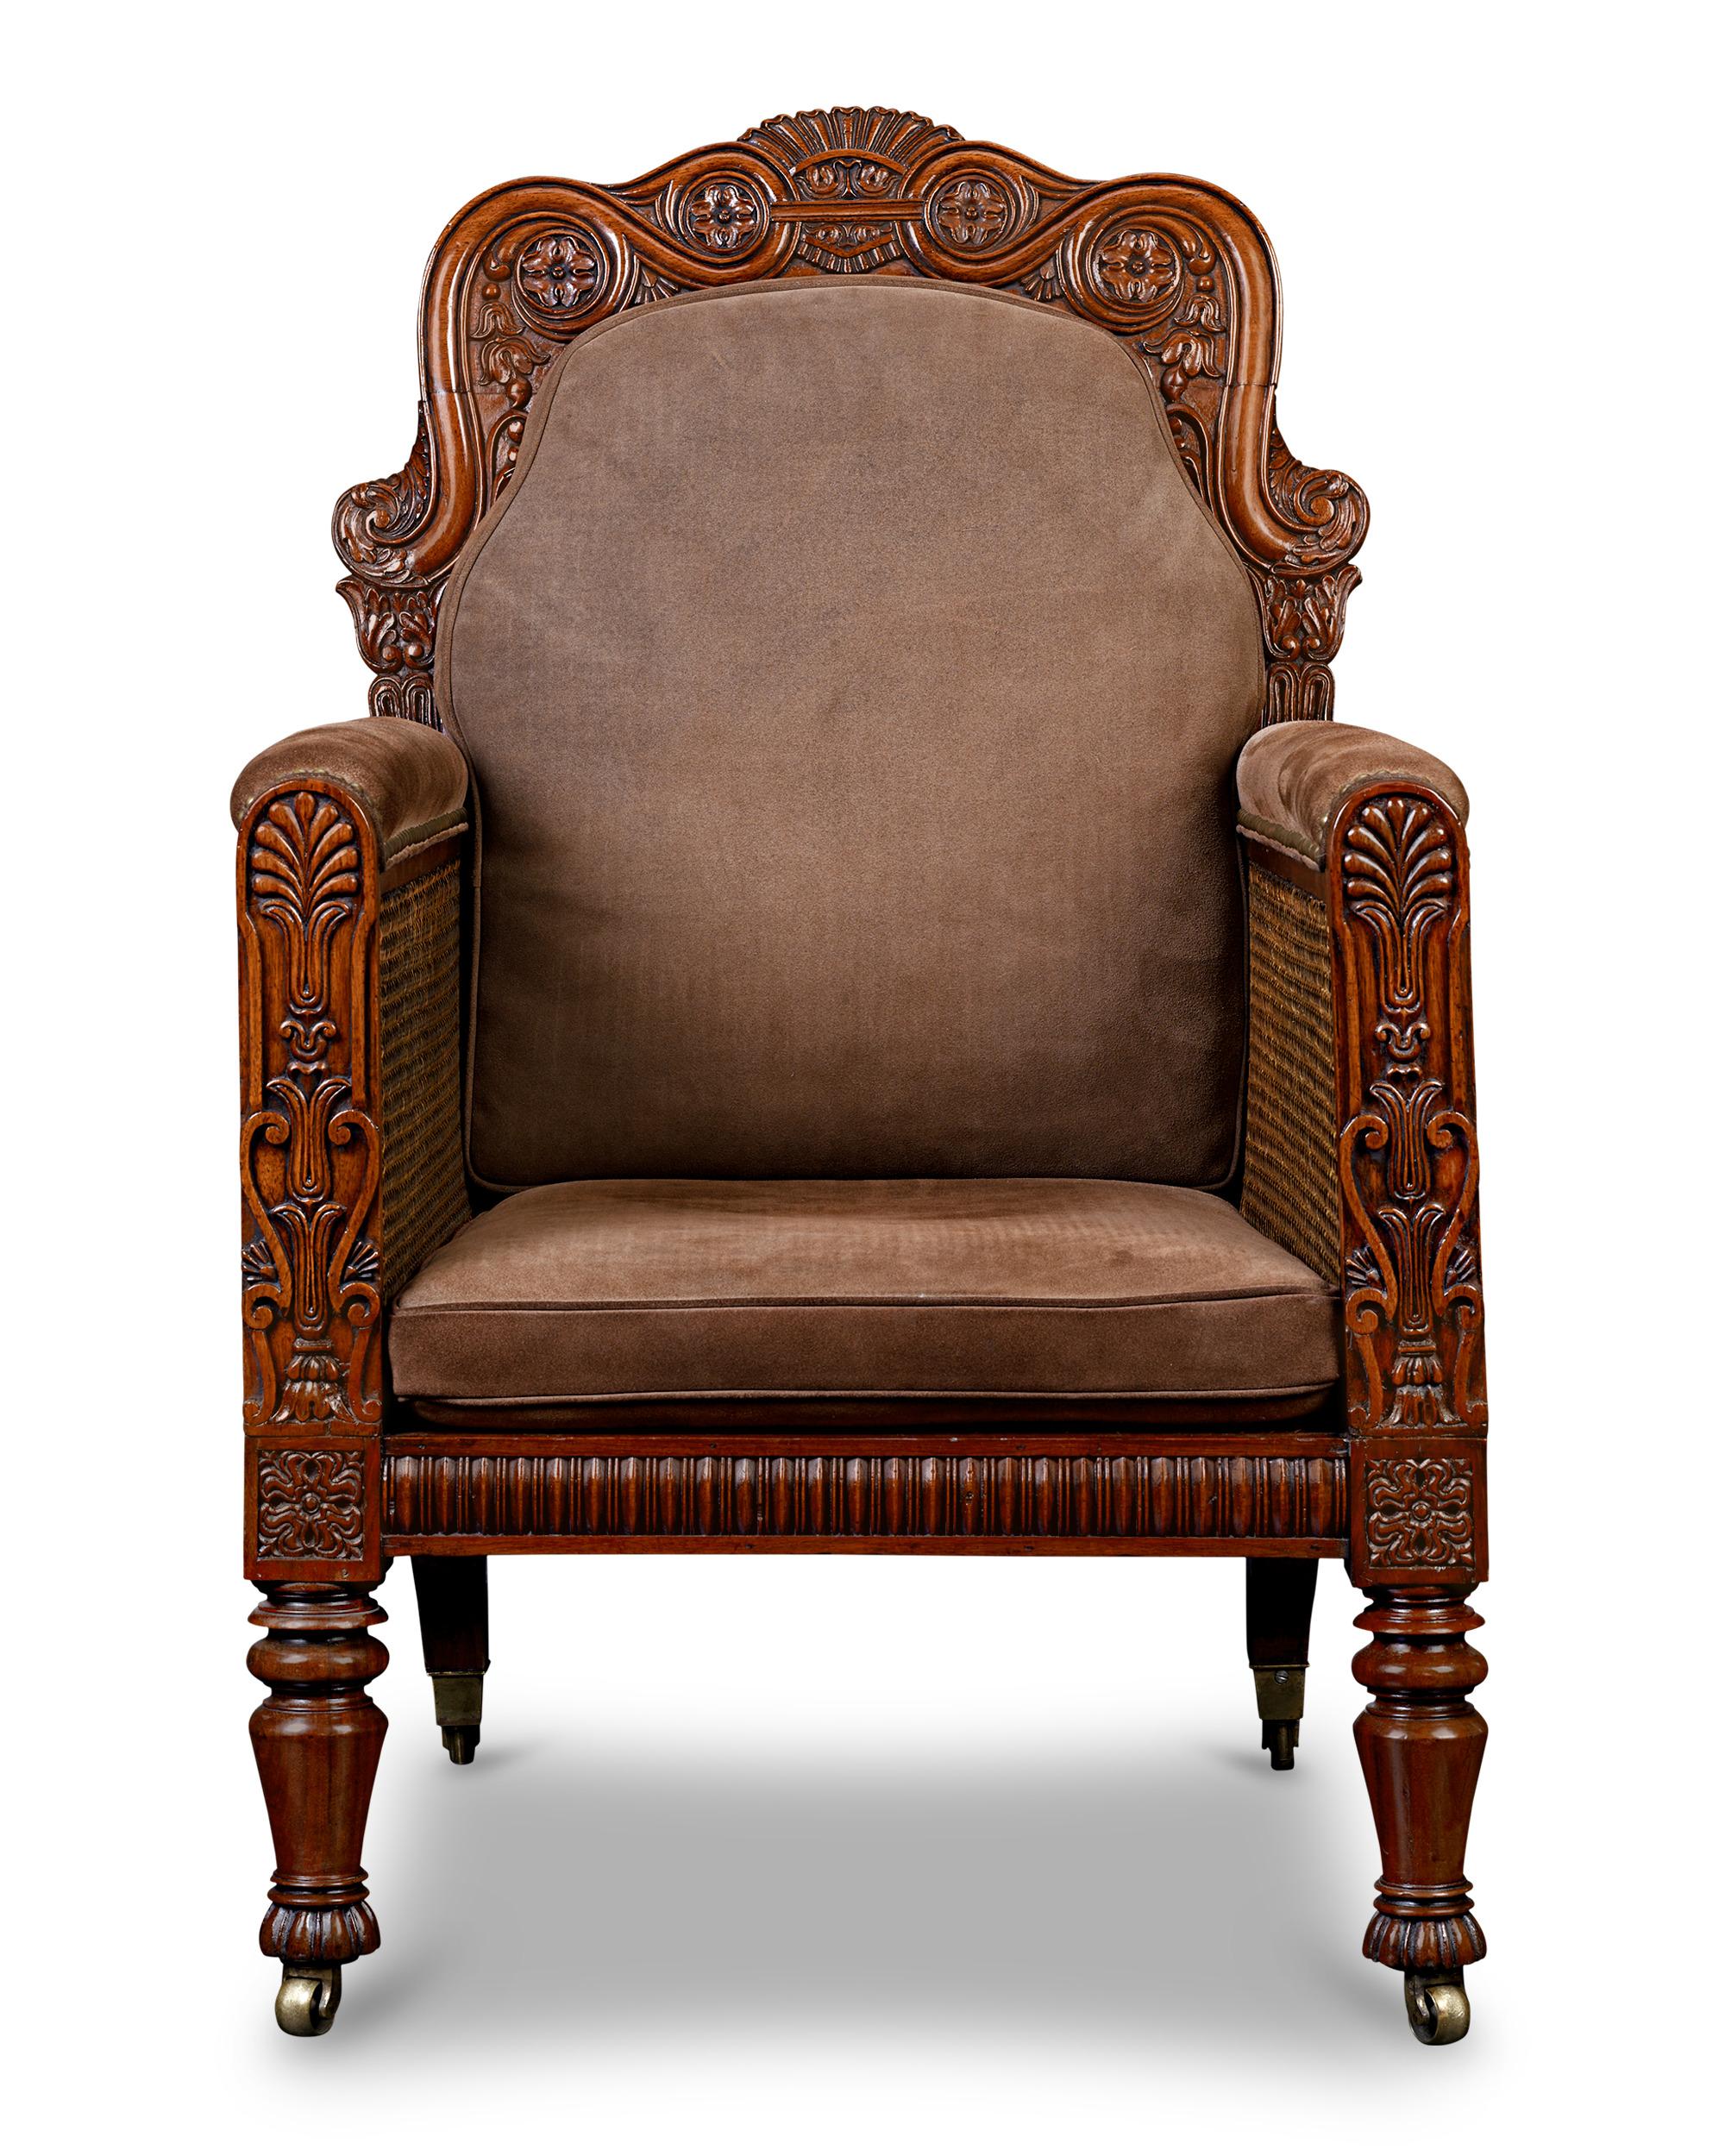 Ce majestueux fauteuil bergère George IV avec détails en cannage respire l'élégance et la sophistication. Le fauteuil est fabriqué en noyer et présente des détails sculptés et des éléments décoratifs, reflétant les influences néoclassiques et